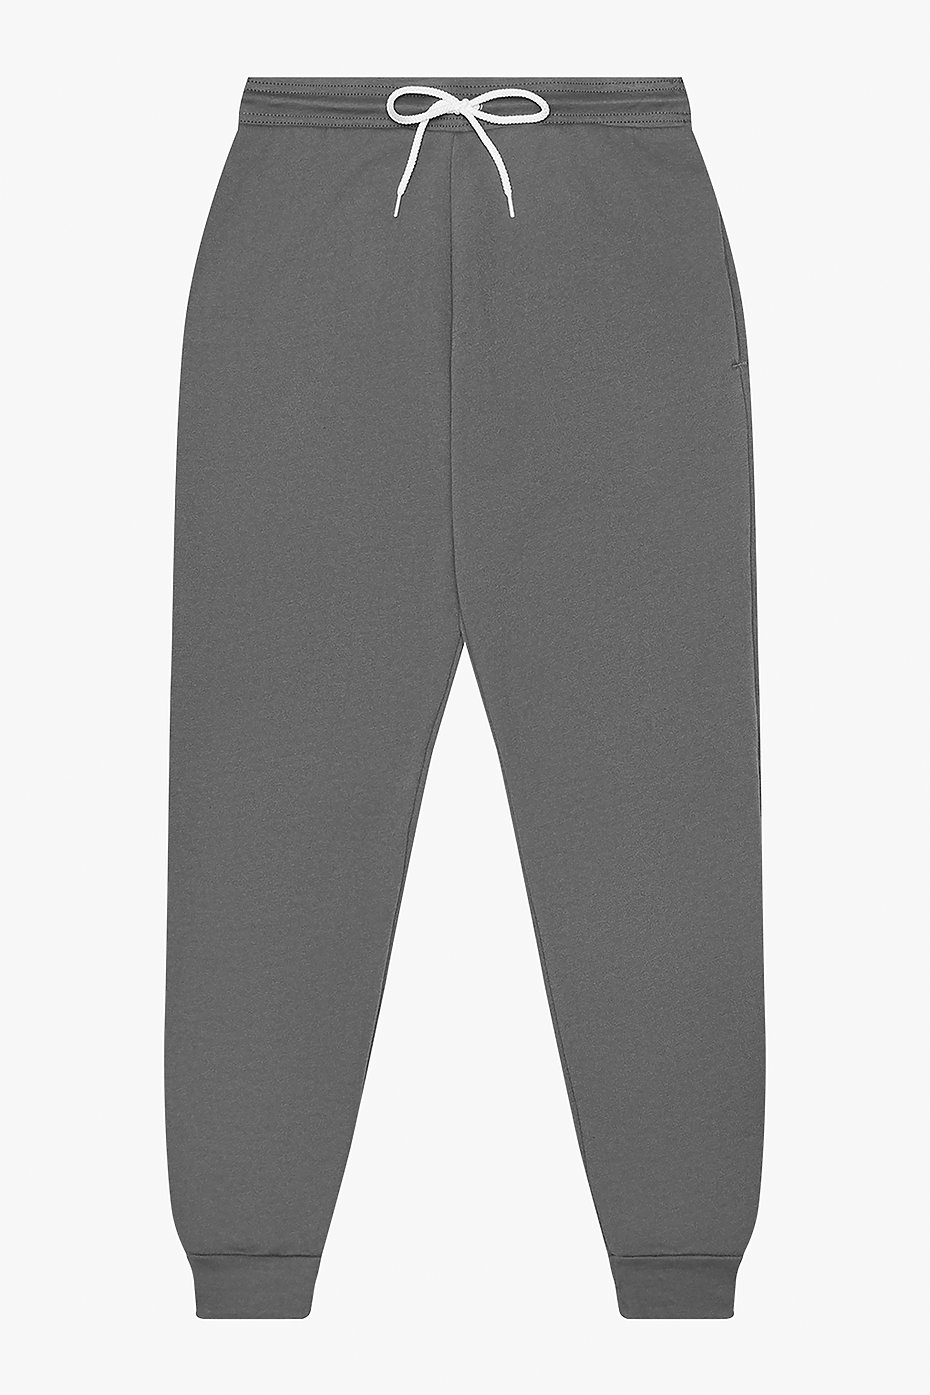 Channel Pant, Men's Light Heather Grey Sweatpants